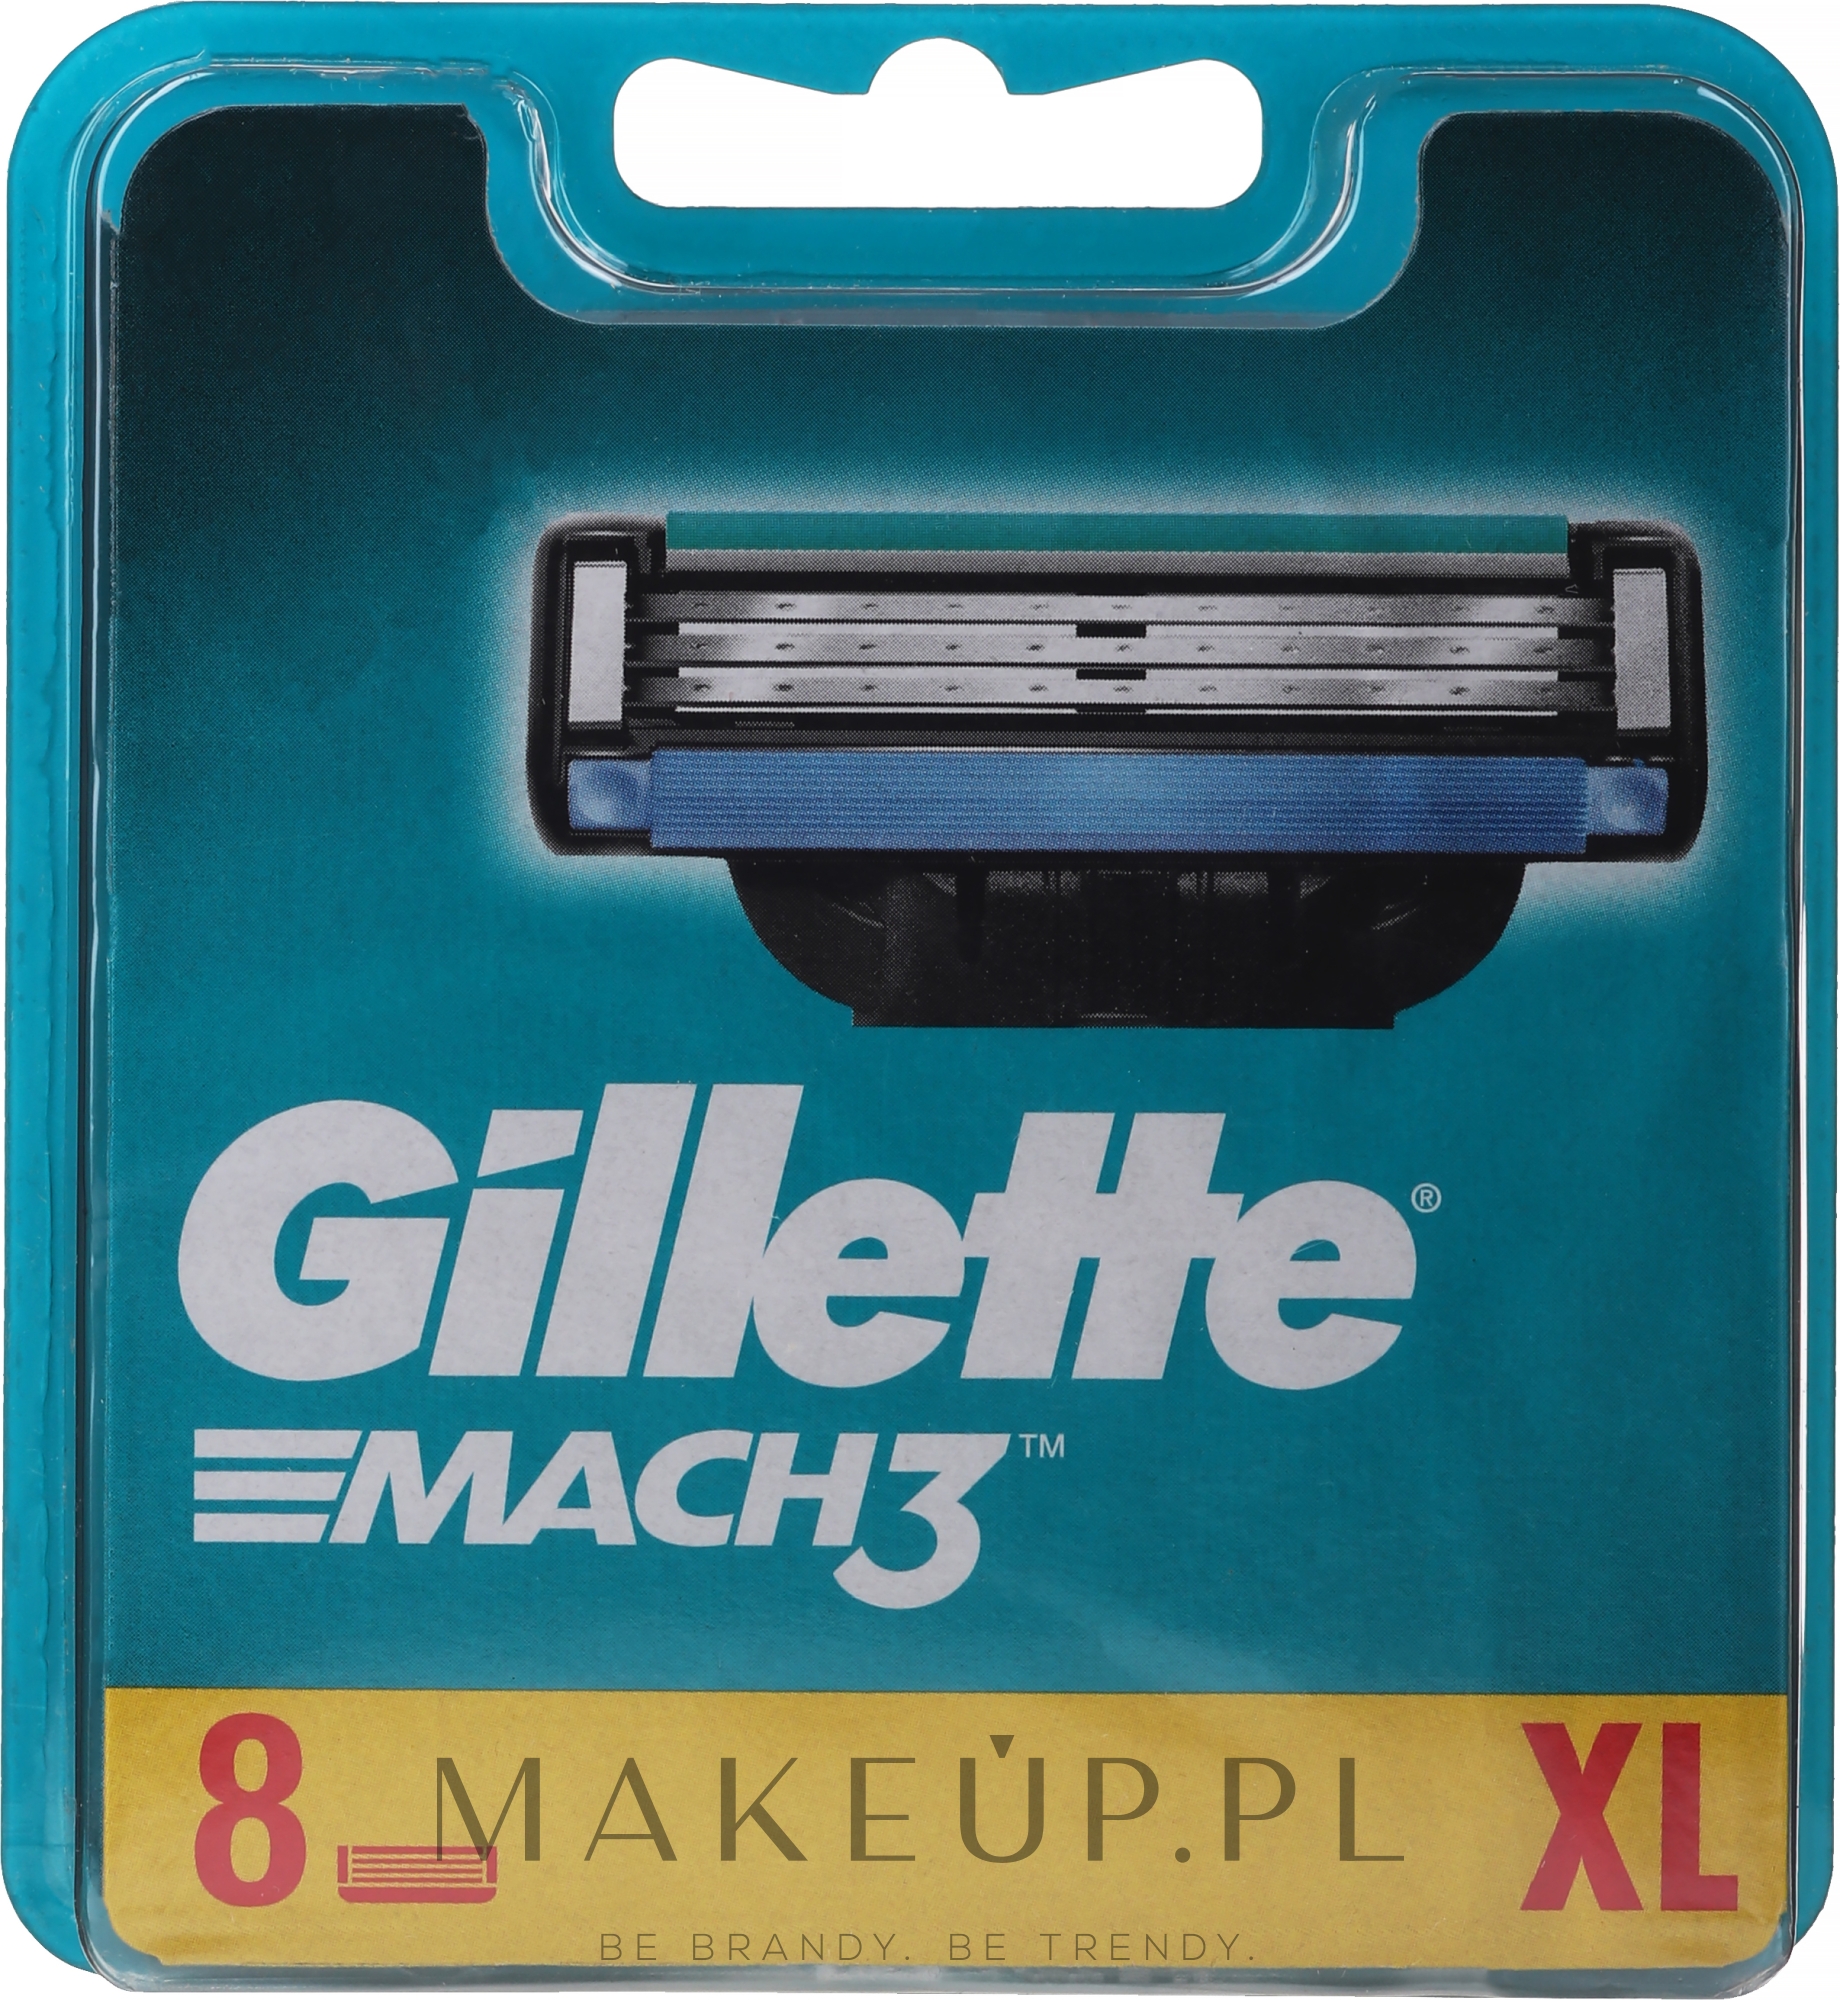 Wymienne wkłady do maszynki, 8 szt. - Gillette Mach3 — Zdjęcie 8 szt.